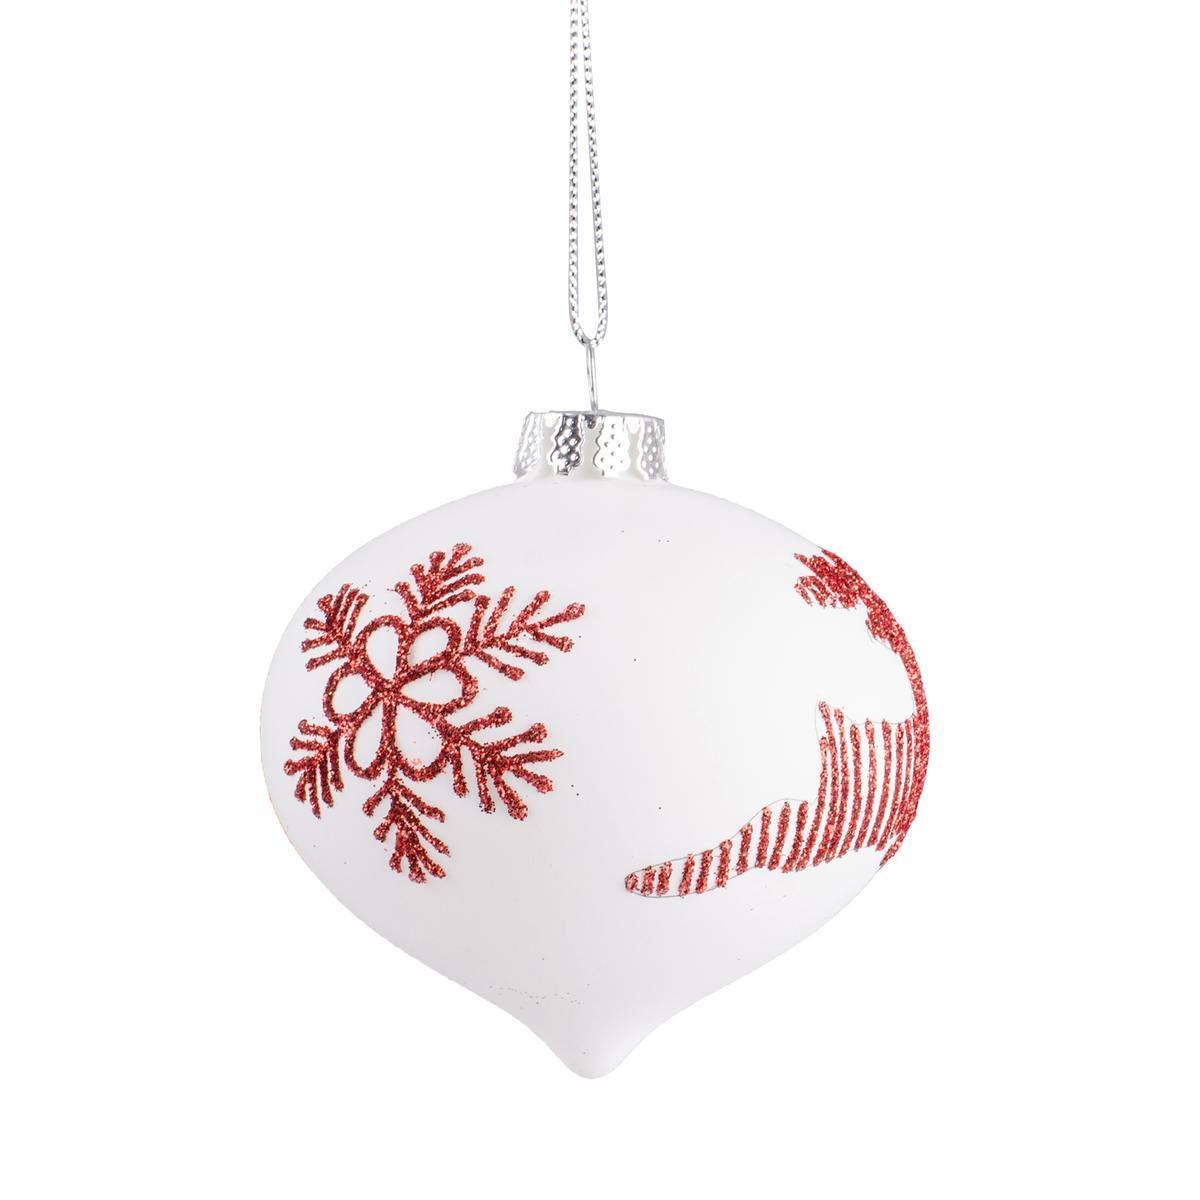 Boule de Noël dessins en pointe - Verre - Ø 8 cm - Blanc et rouge